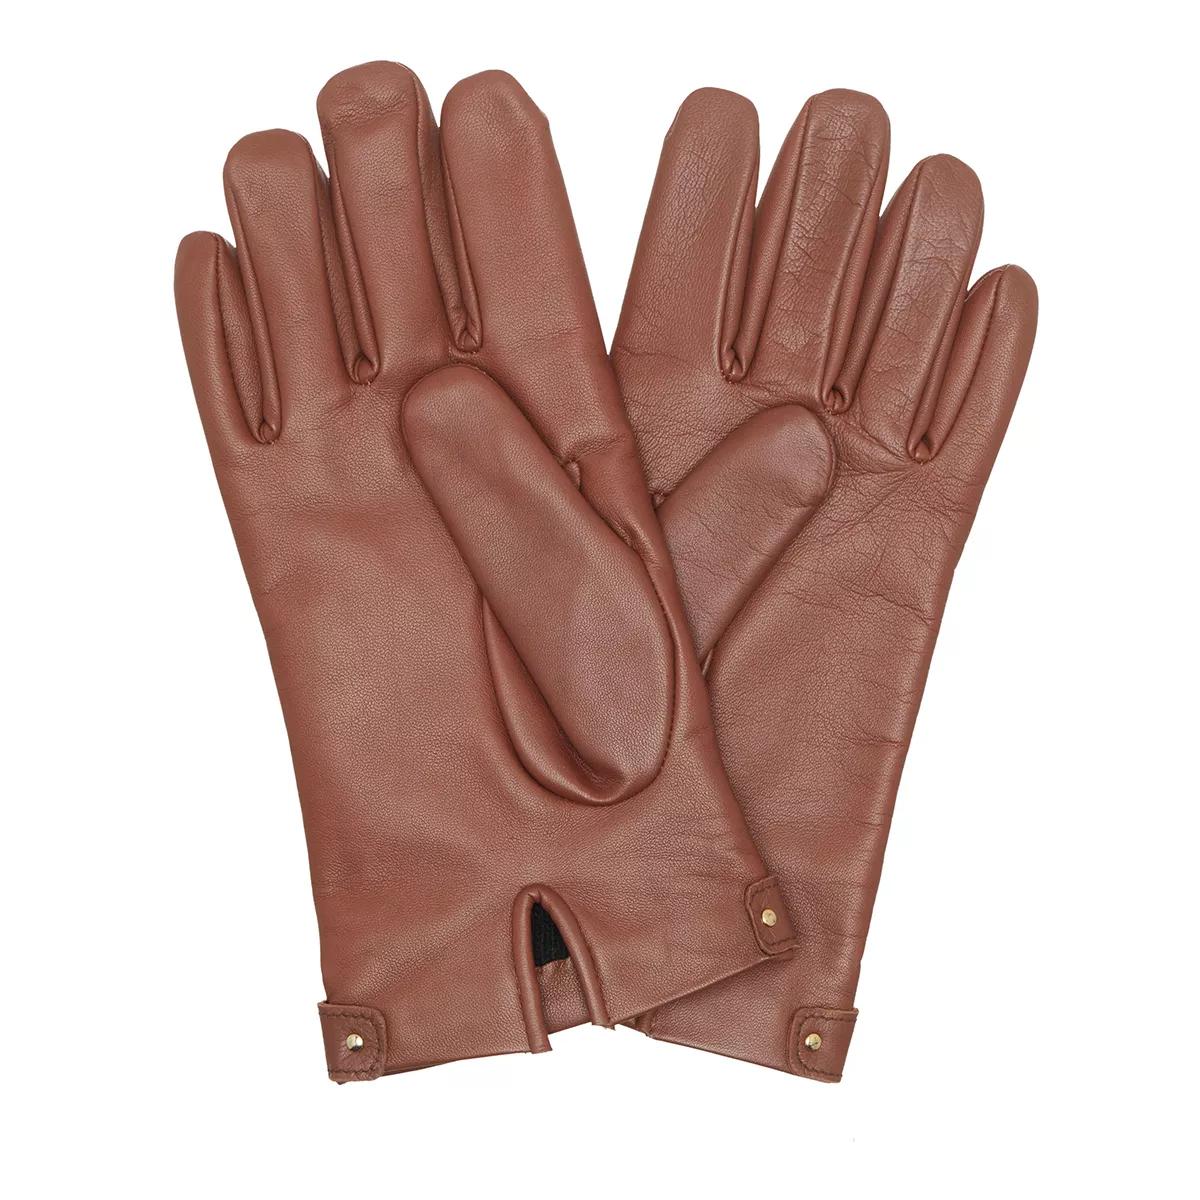 Moschino Handschuhe - Glove M5168 - Gr. M - in Braun - für Damen von Moschino